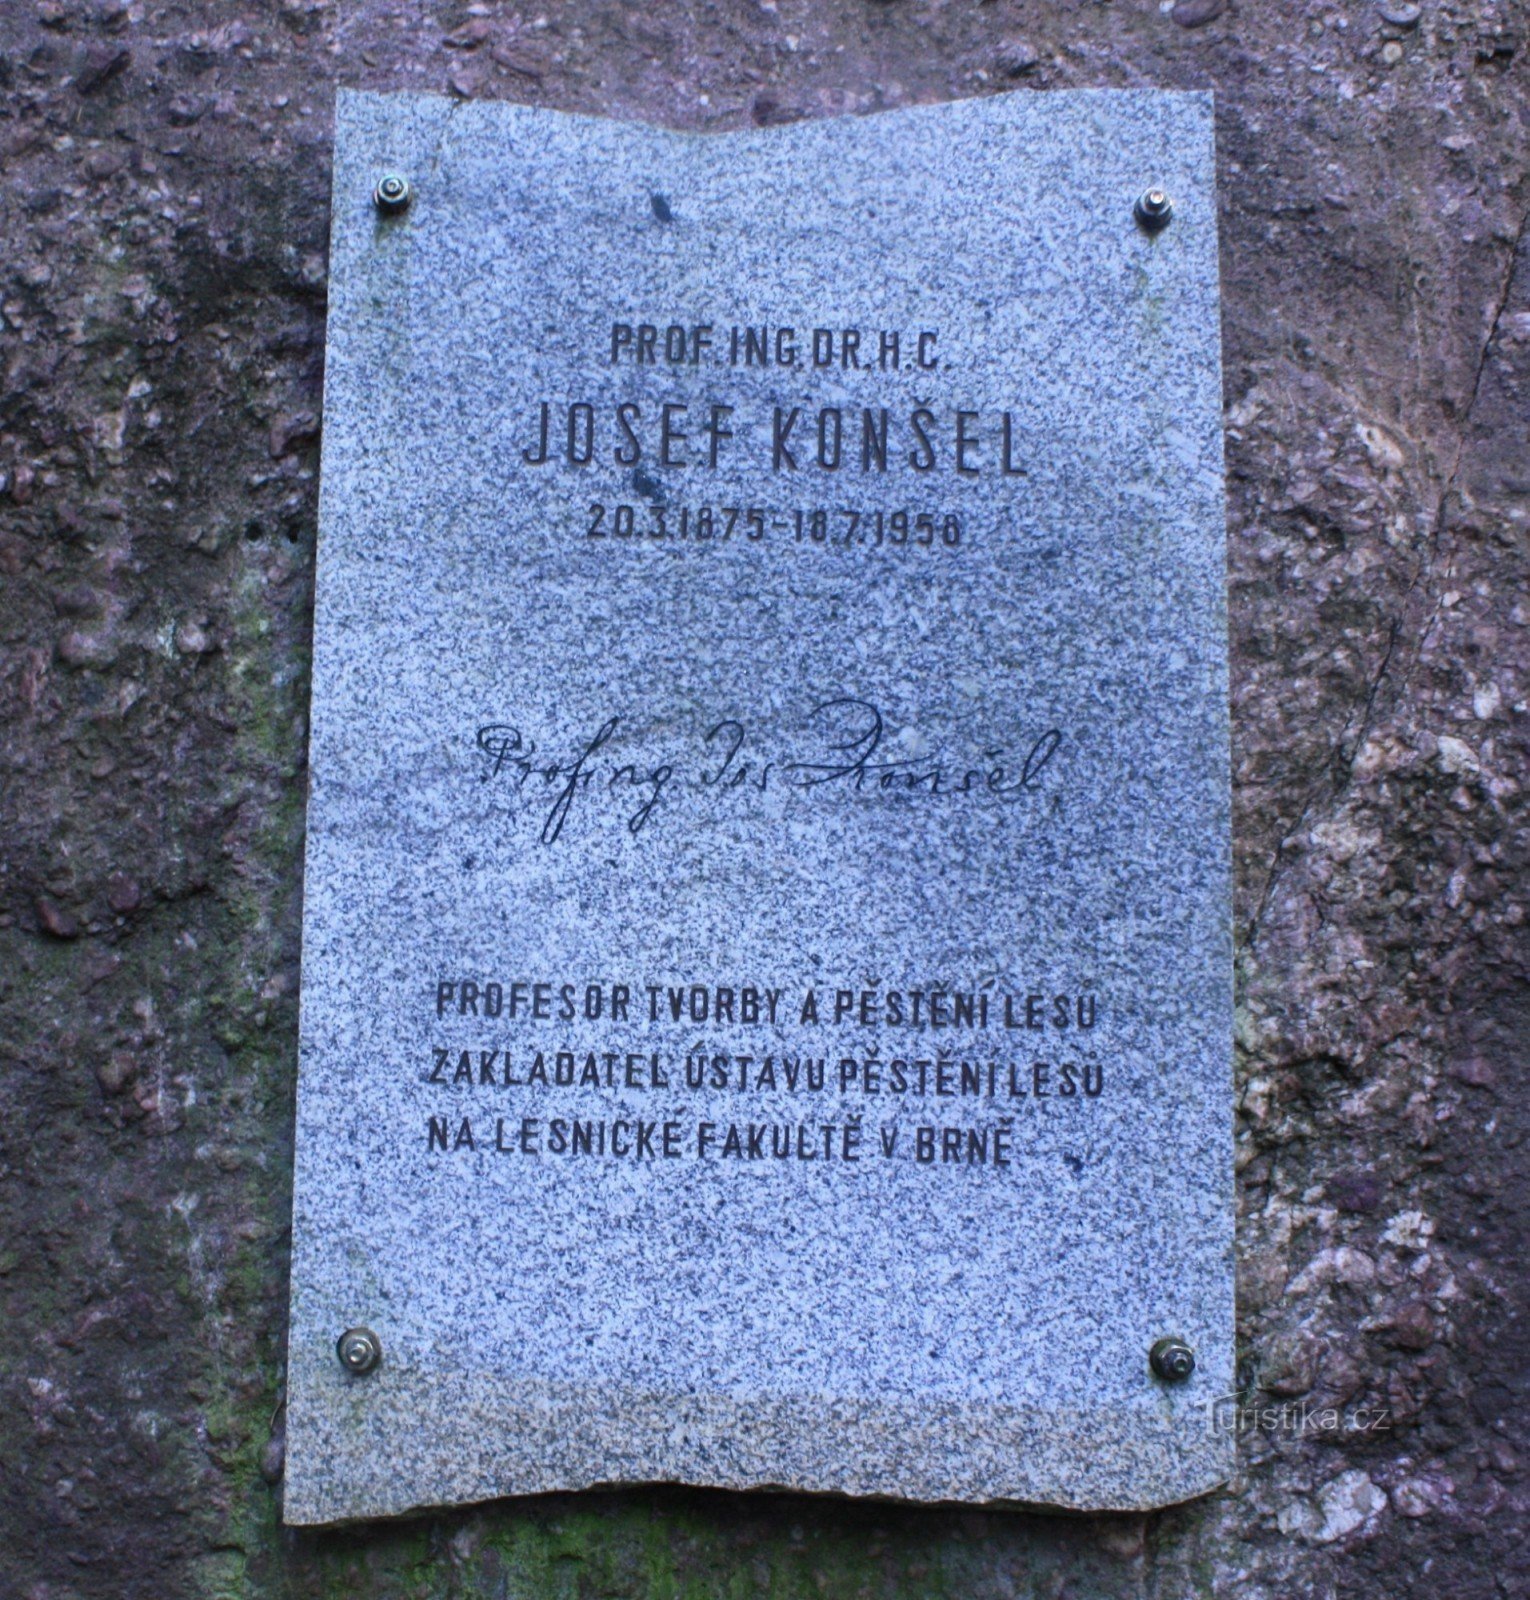 Monument voor Josef Konšel